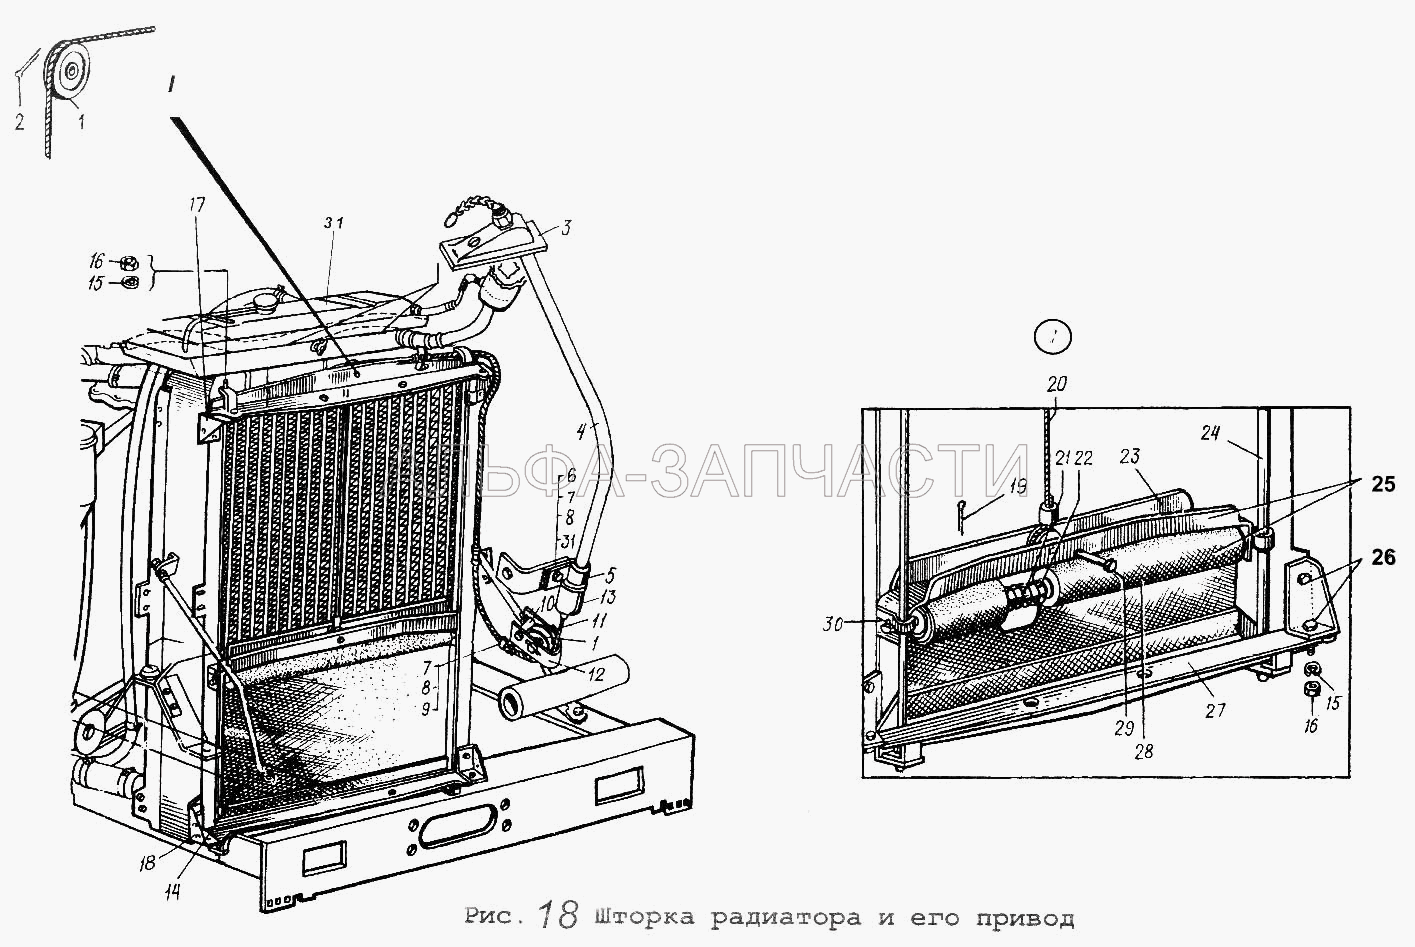 Шторка радиатора и его привод (201422 Болт М6-6gх25 ОСТ 37.001.123-81) 